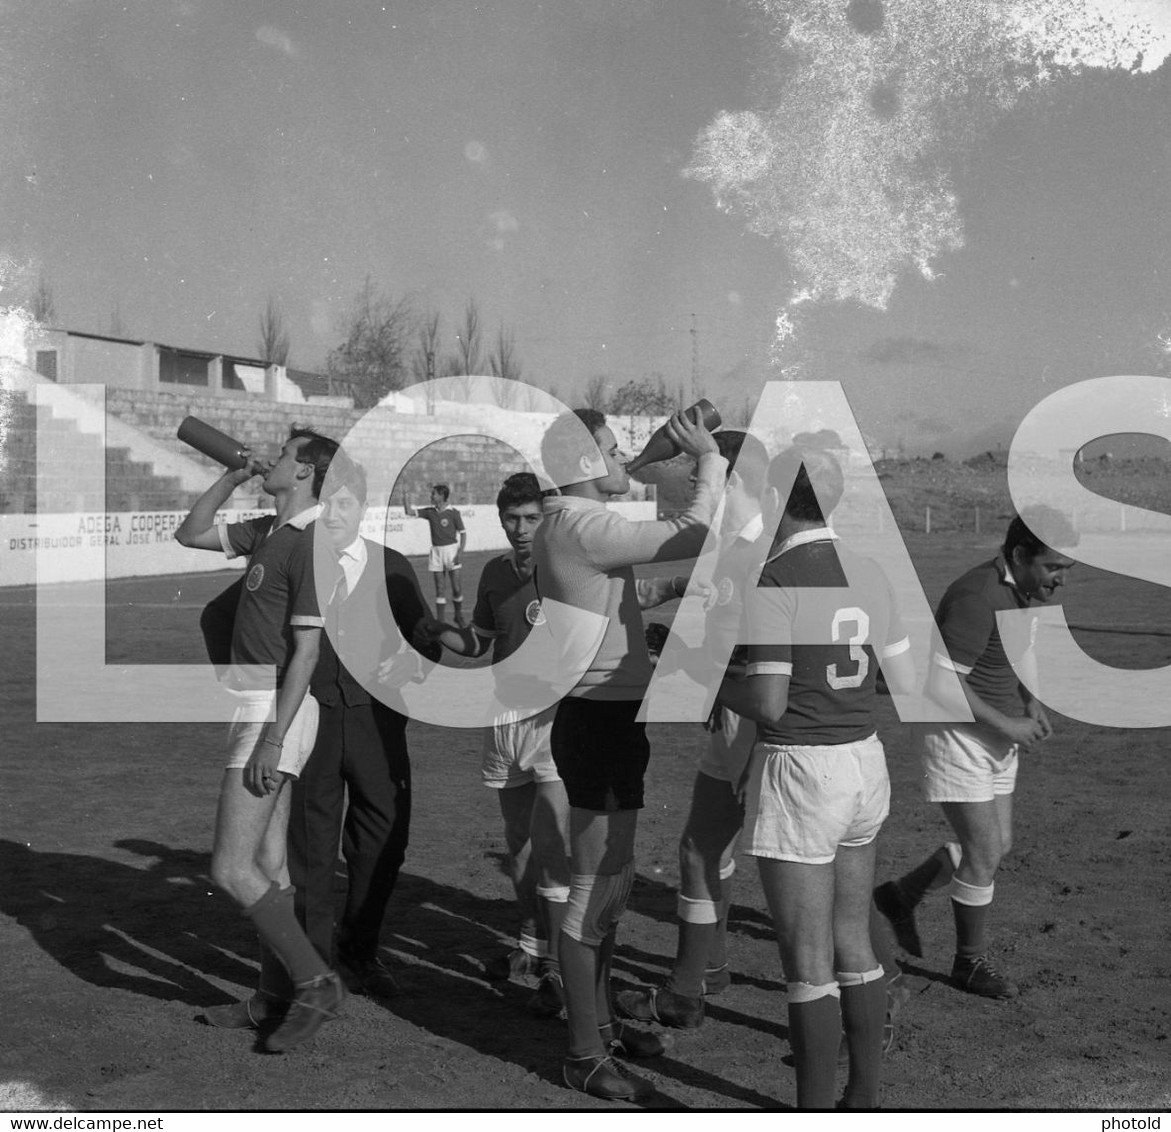 1965 FUTEBOL PRAGAL ALMADA CACILHAS PORTUGAL ORIGINAL SET 60mm NEGATIVE NOT PHOTO FOTO LCAS224